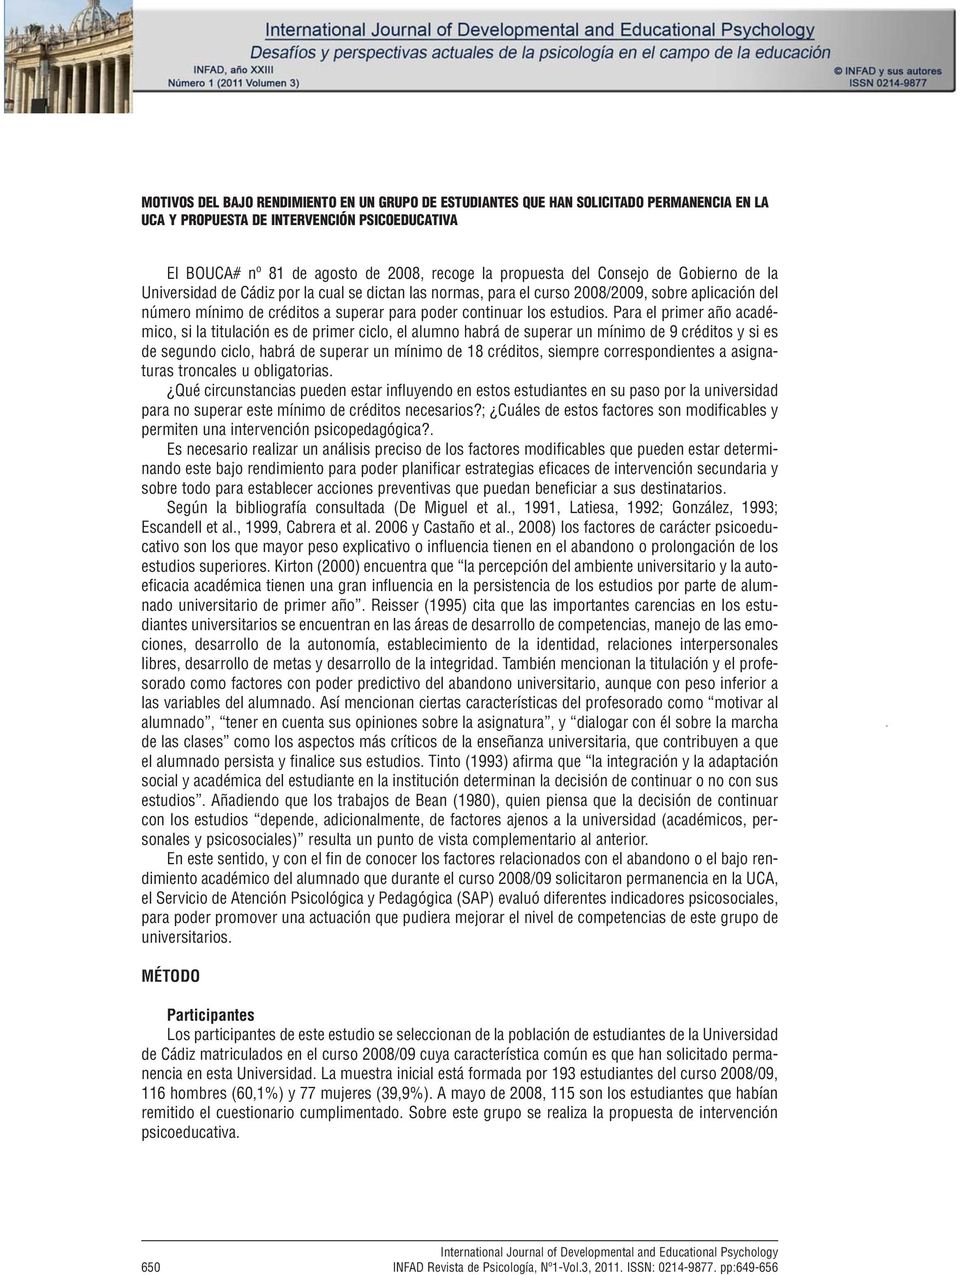 2008, recoge la propuesta del Consejo de Gobierno de la Universidad de Cádiz por la cual se dictan las normas, para el curso 2008/2009, sobre aplicación del número mínimo de créditos a superar para